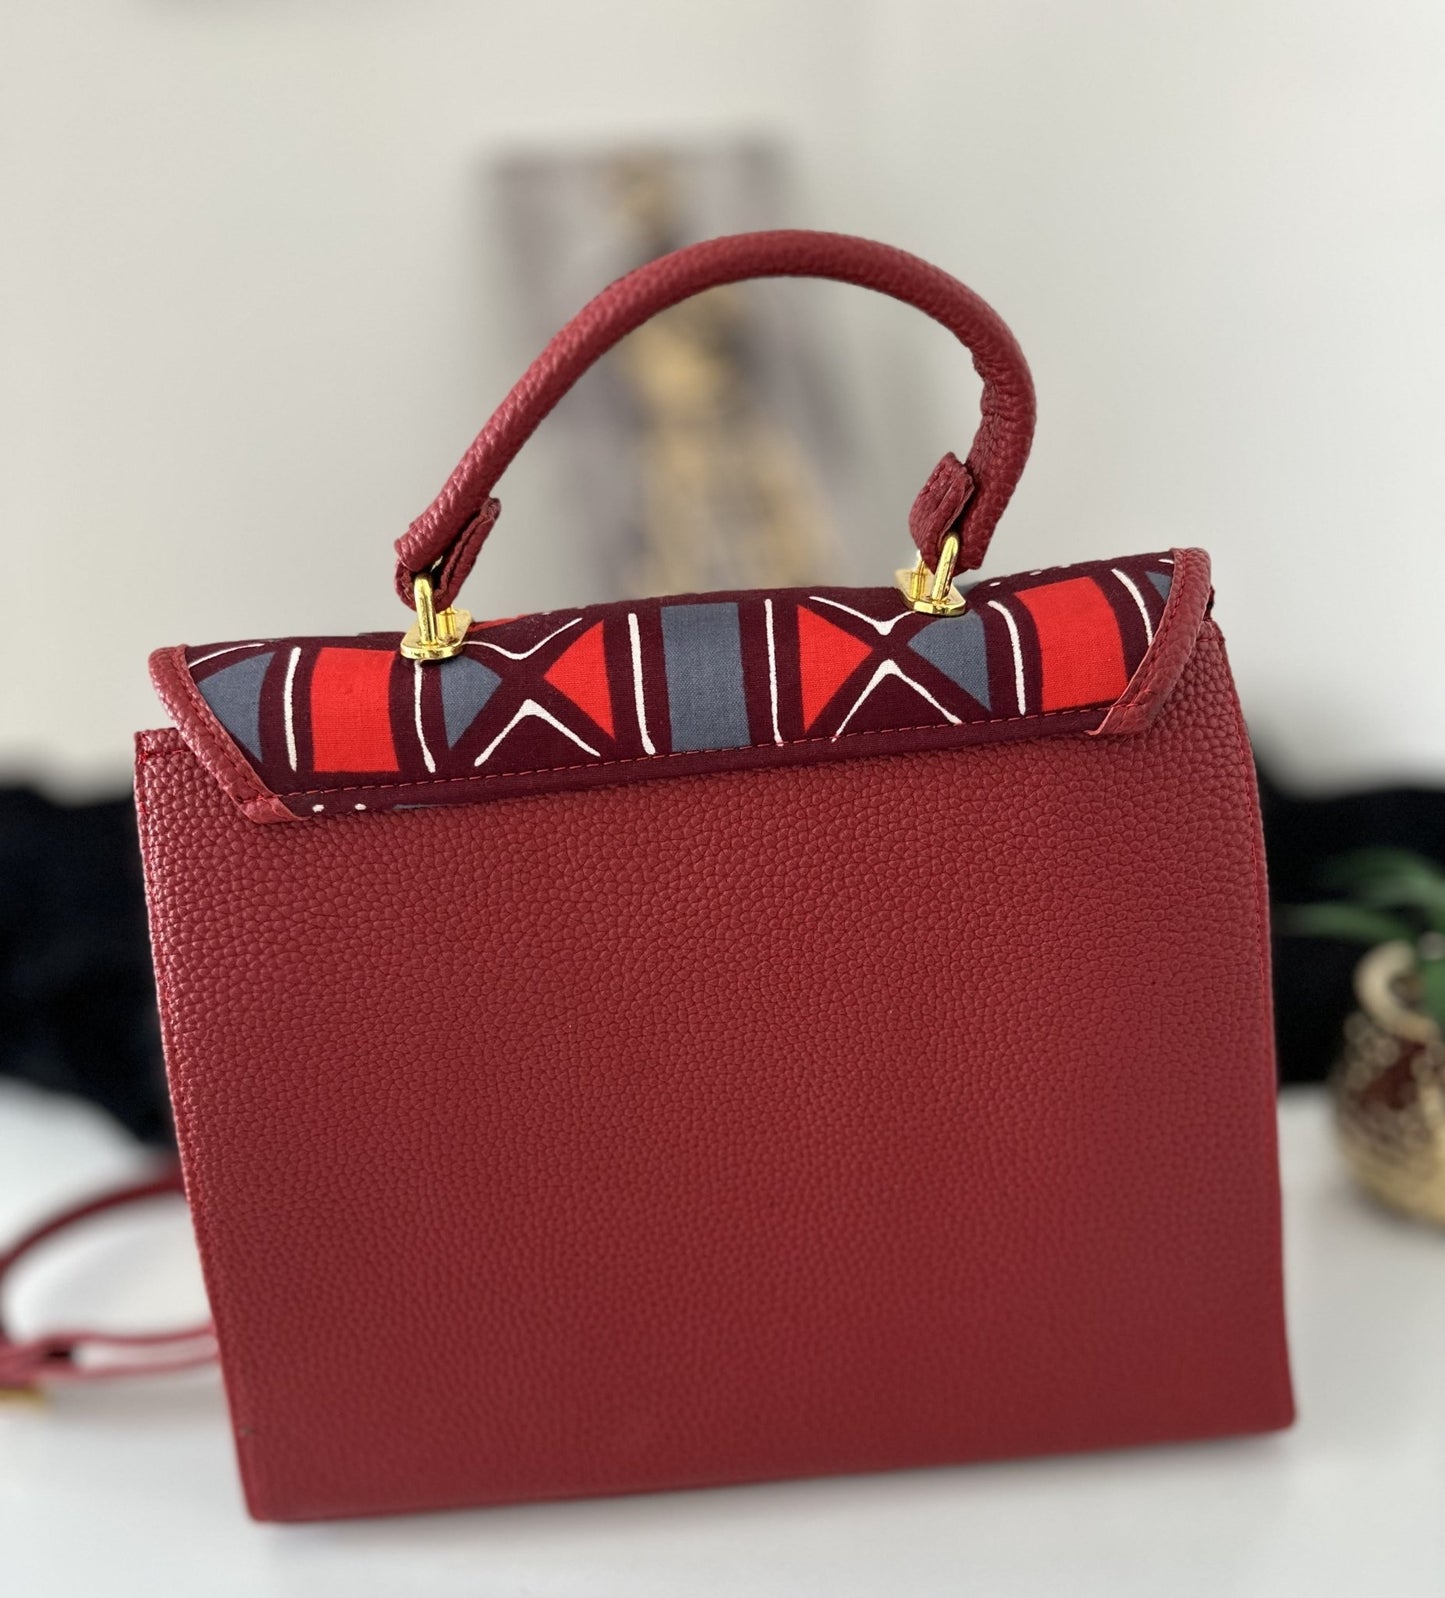 Alexia Ankara handbag/ luxury handbag/ sac à main Africain de luxe - Nguet’s Design